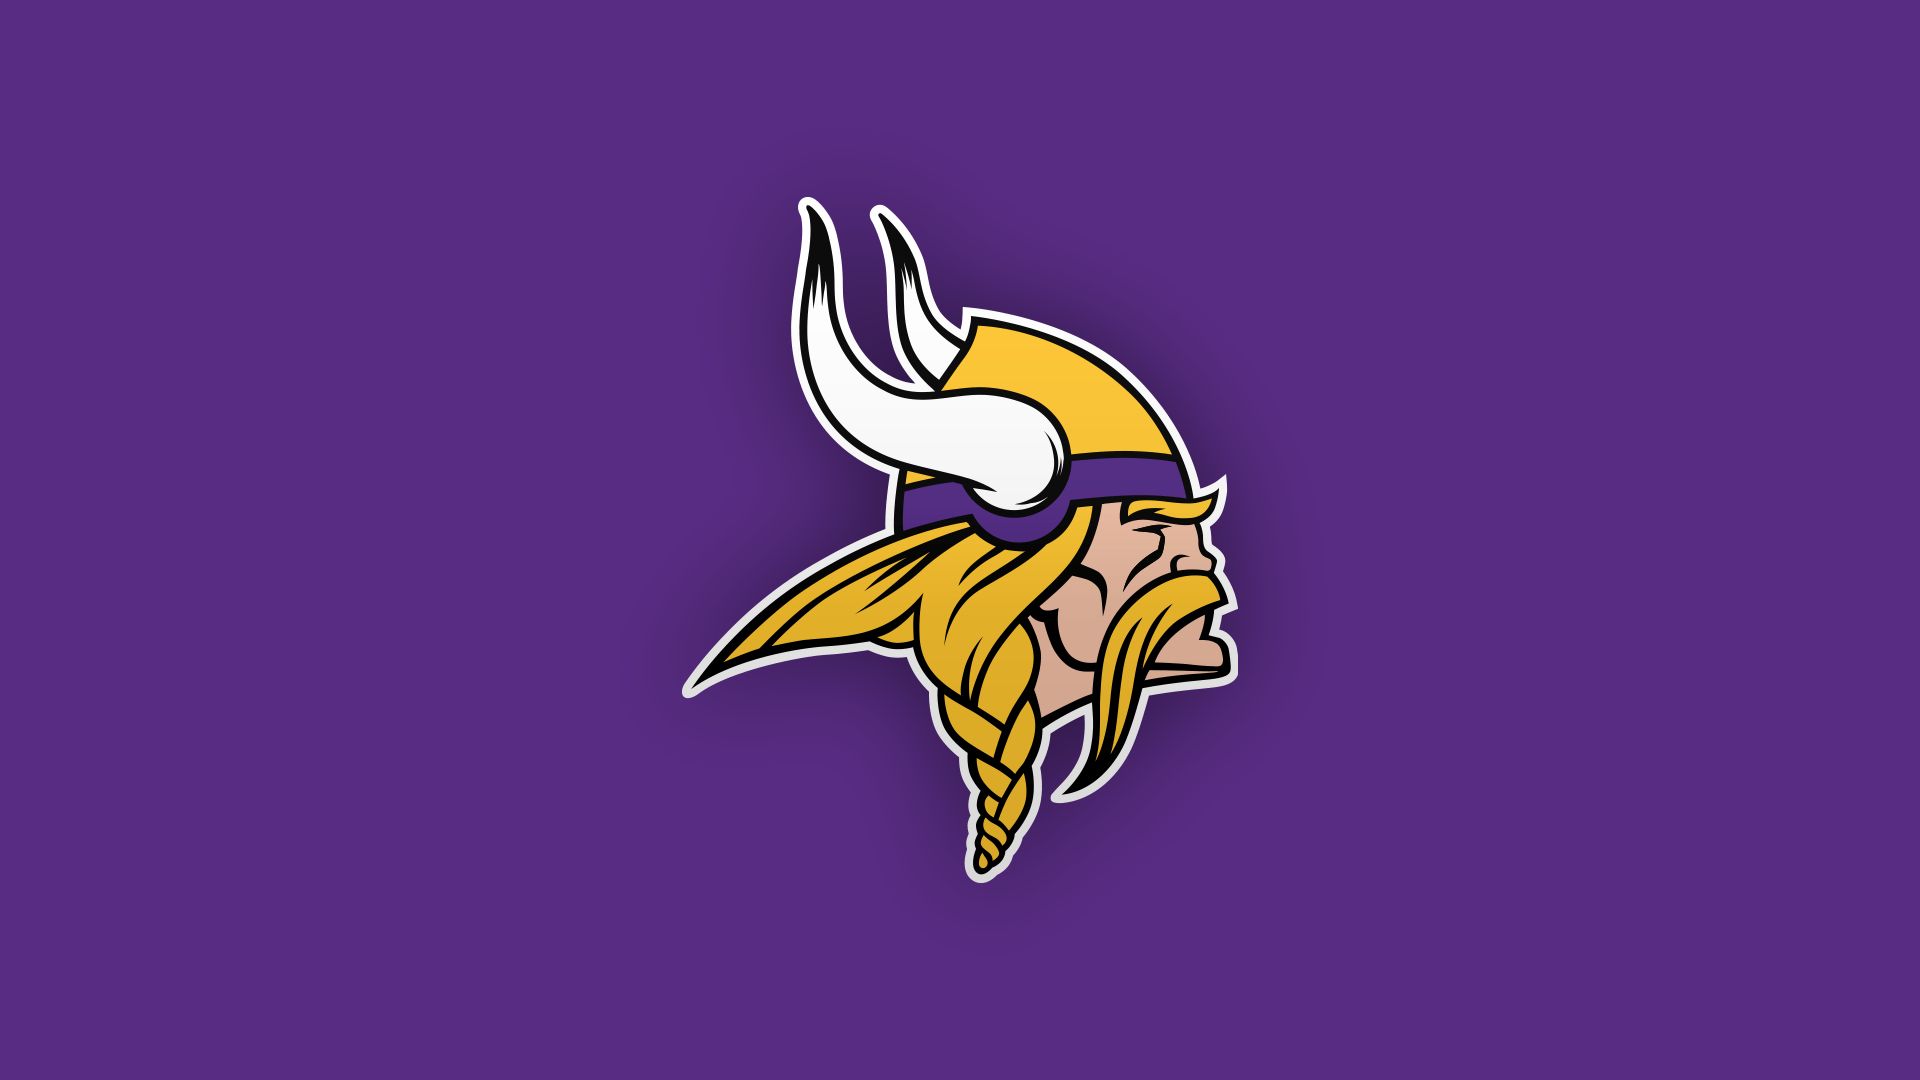 Minnesota Vikings free image